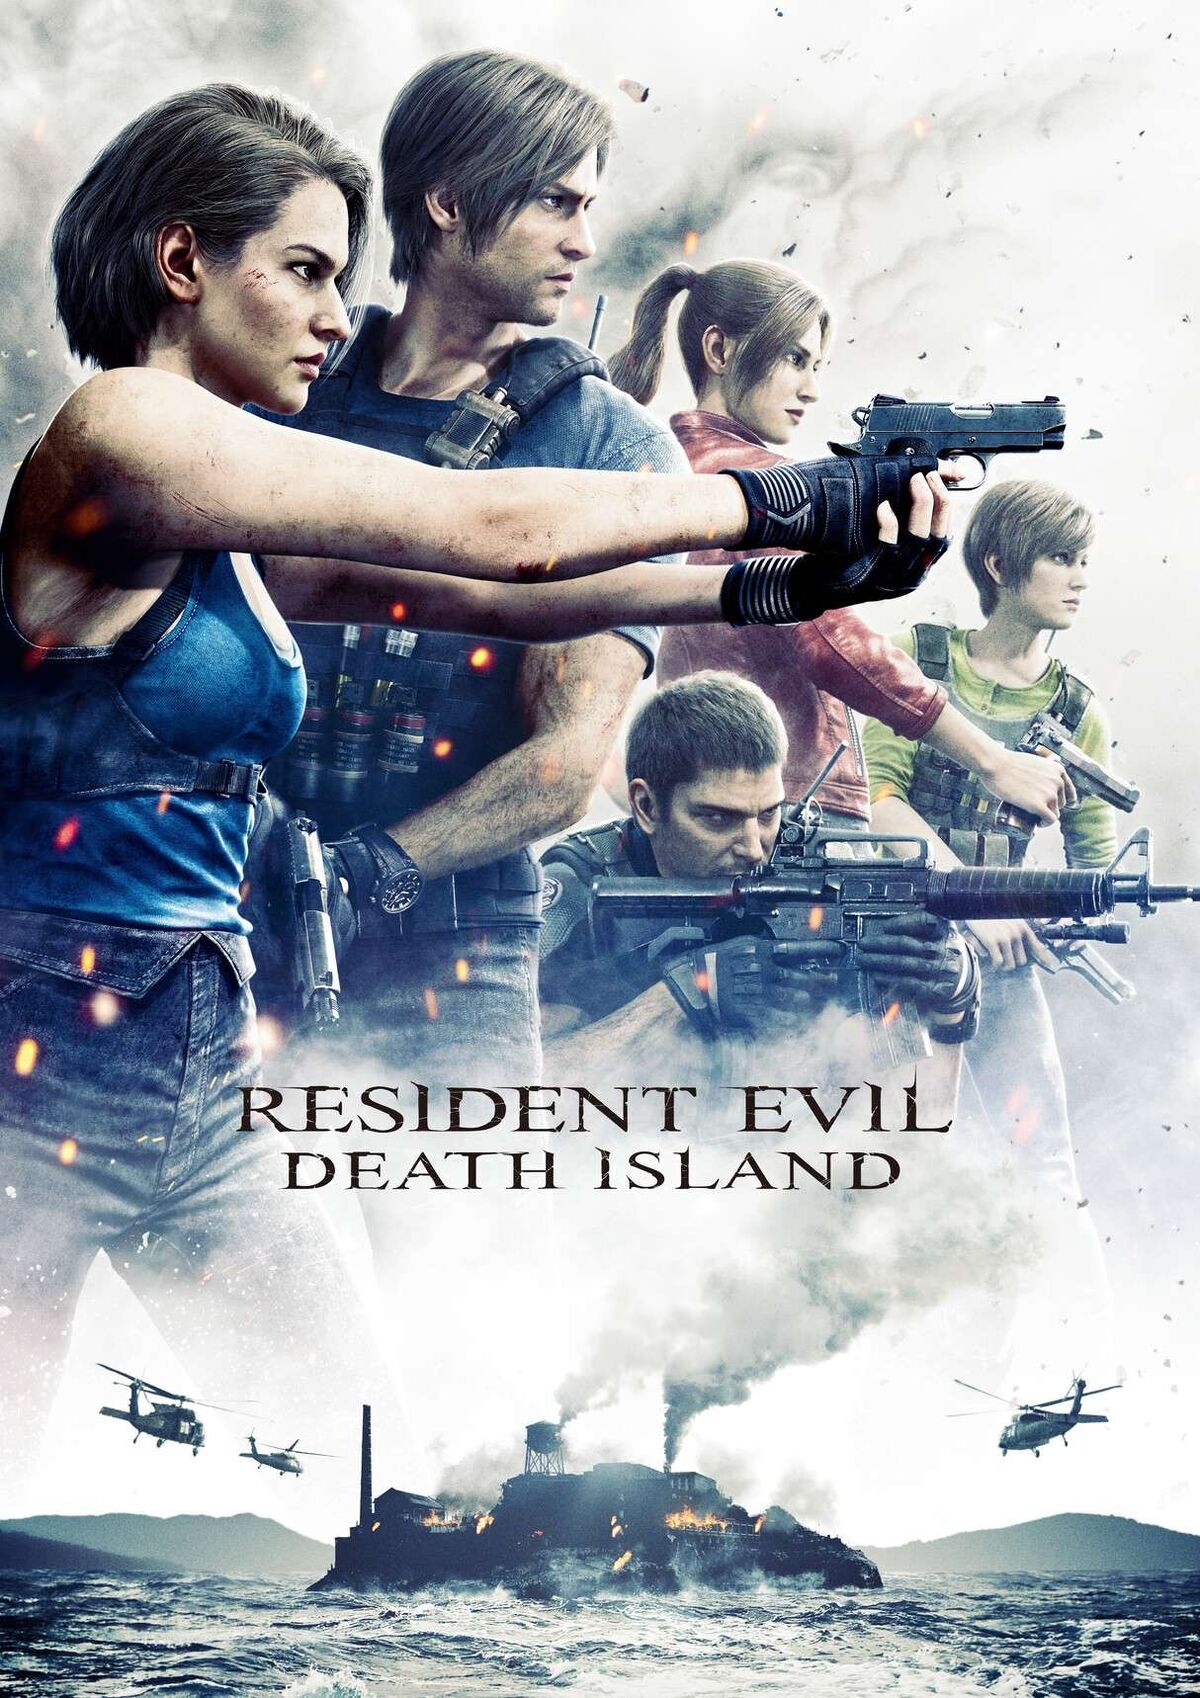 Movie Franchise - Resident Evil: Retribution 3D Guide - IGN